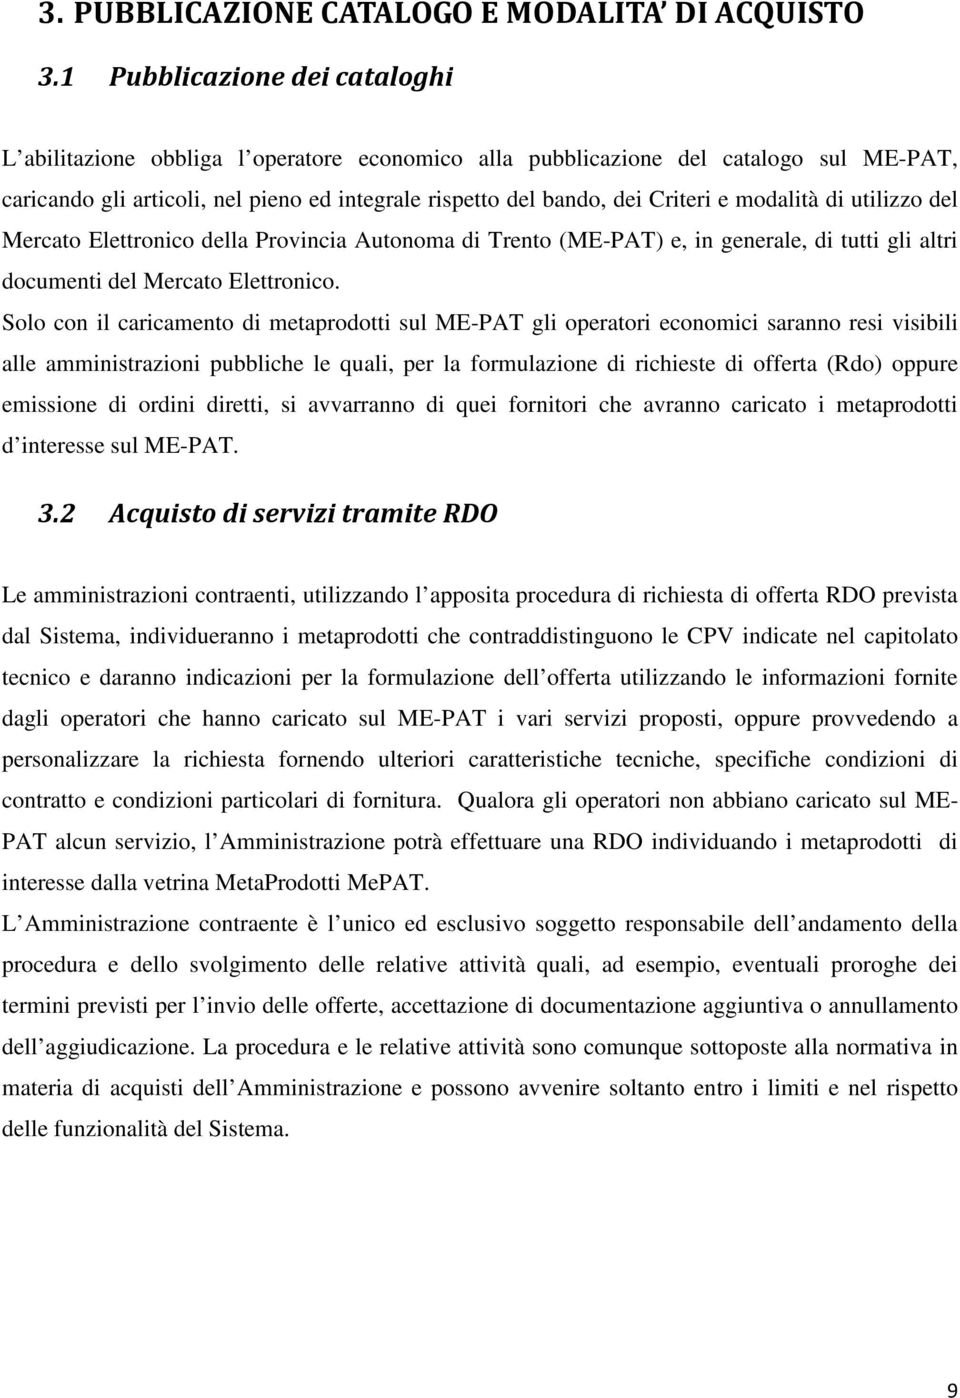 modalità di utilizzo del Mercato Elettronico della Provincia Autonoma di Trento (ME-PAT) e, in generale, di tutti gli altri documenti del Mercato Elettronico.